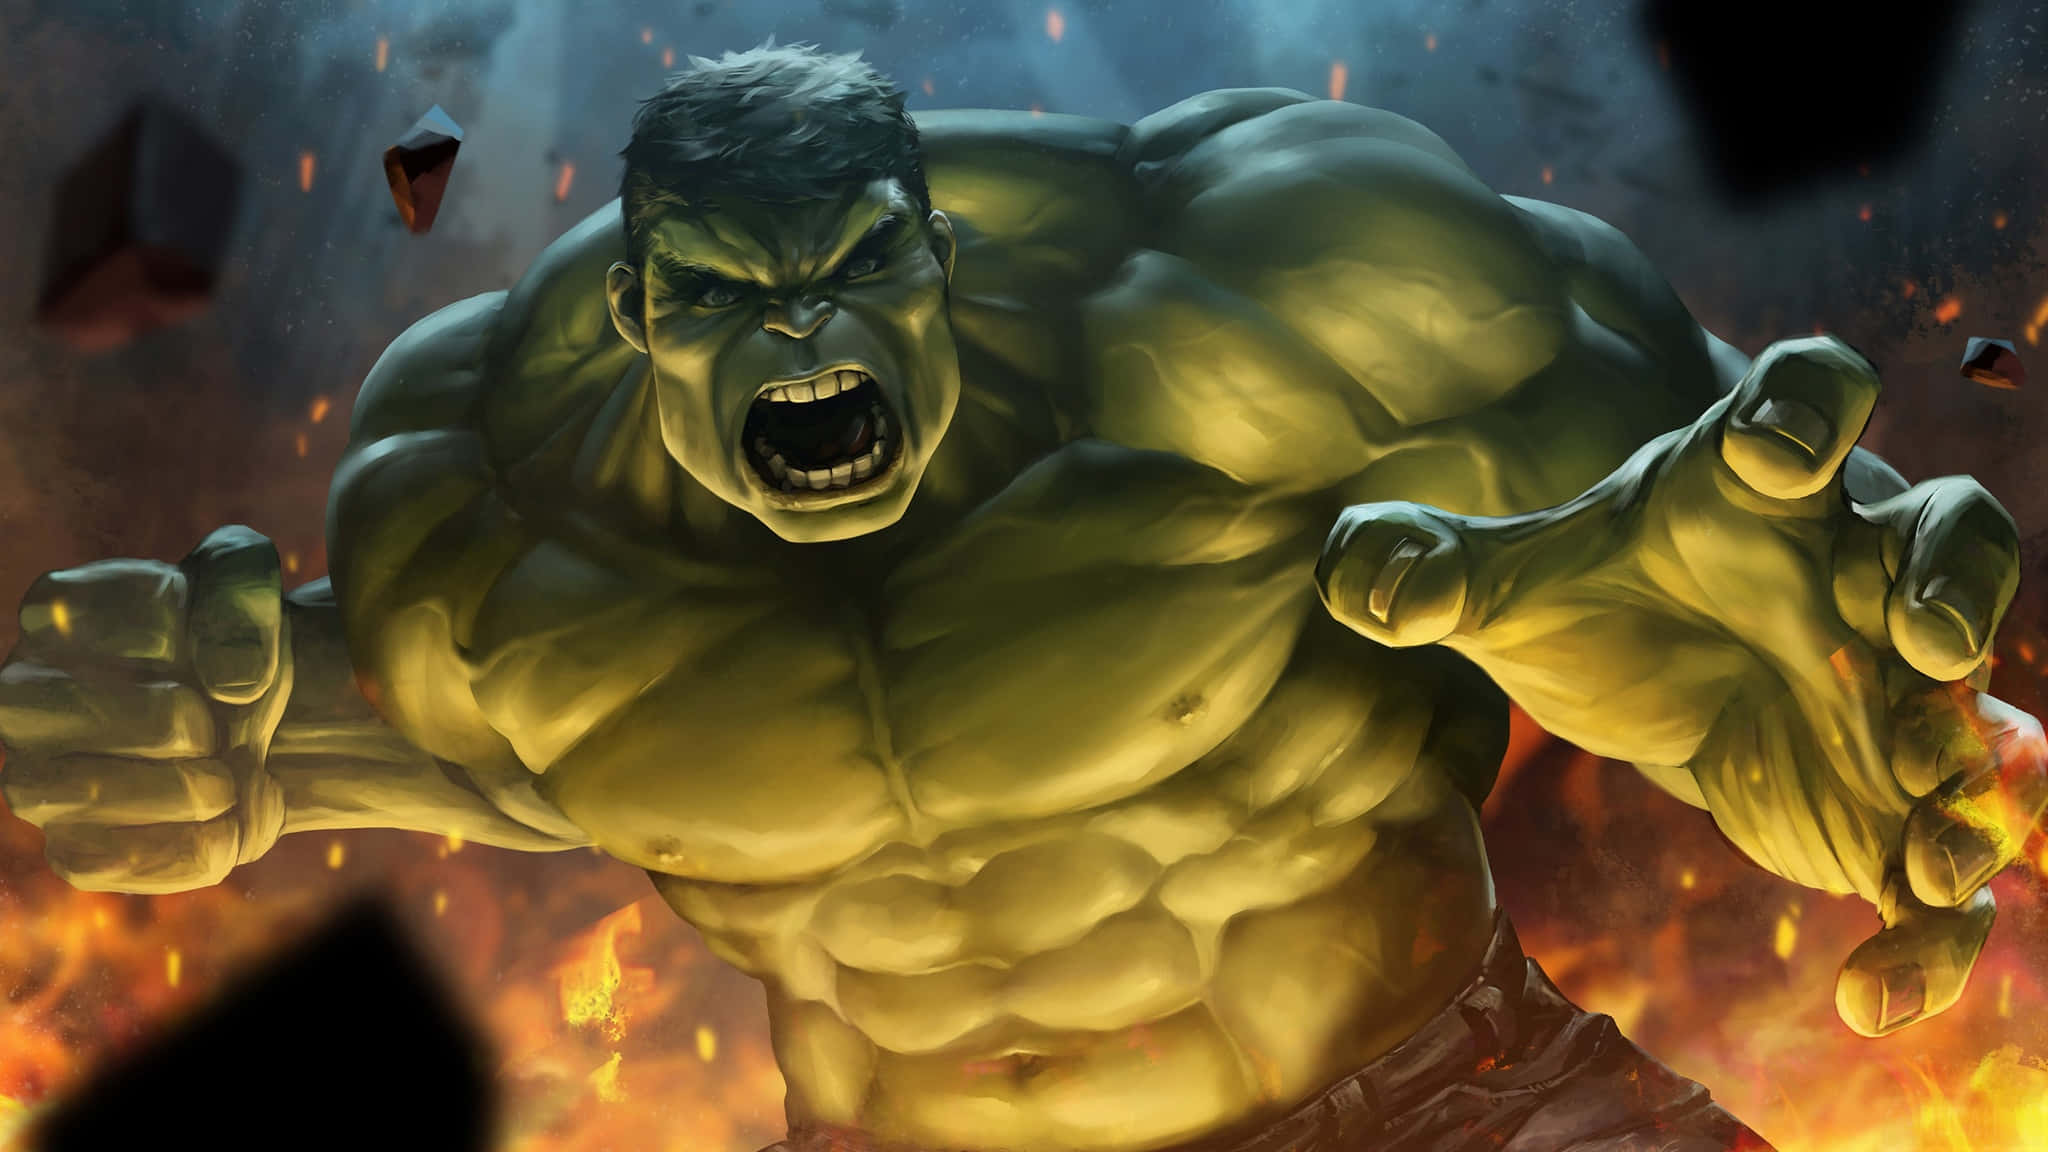 Derunglaubliche Hulk Entfesselt Seine Kraft.